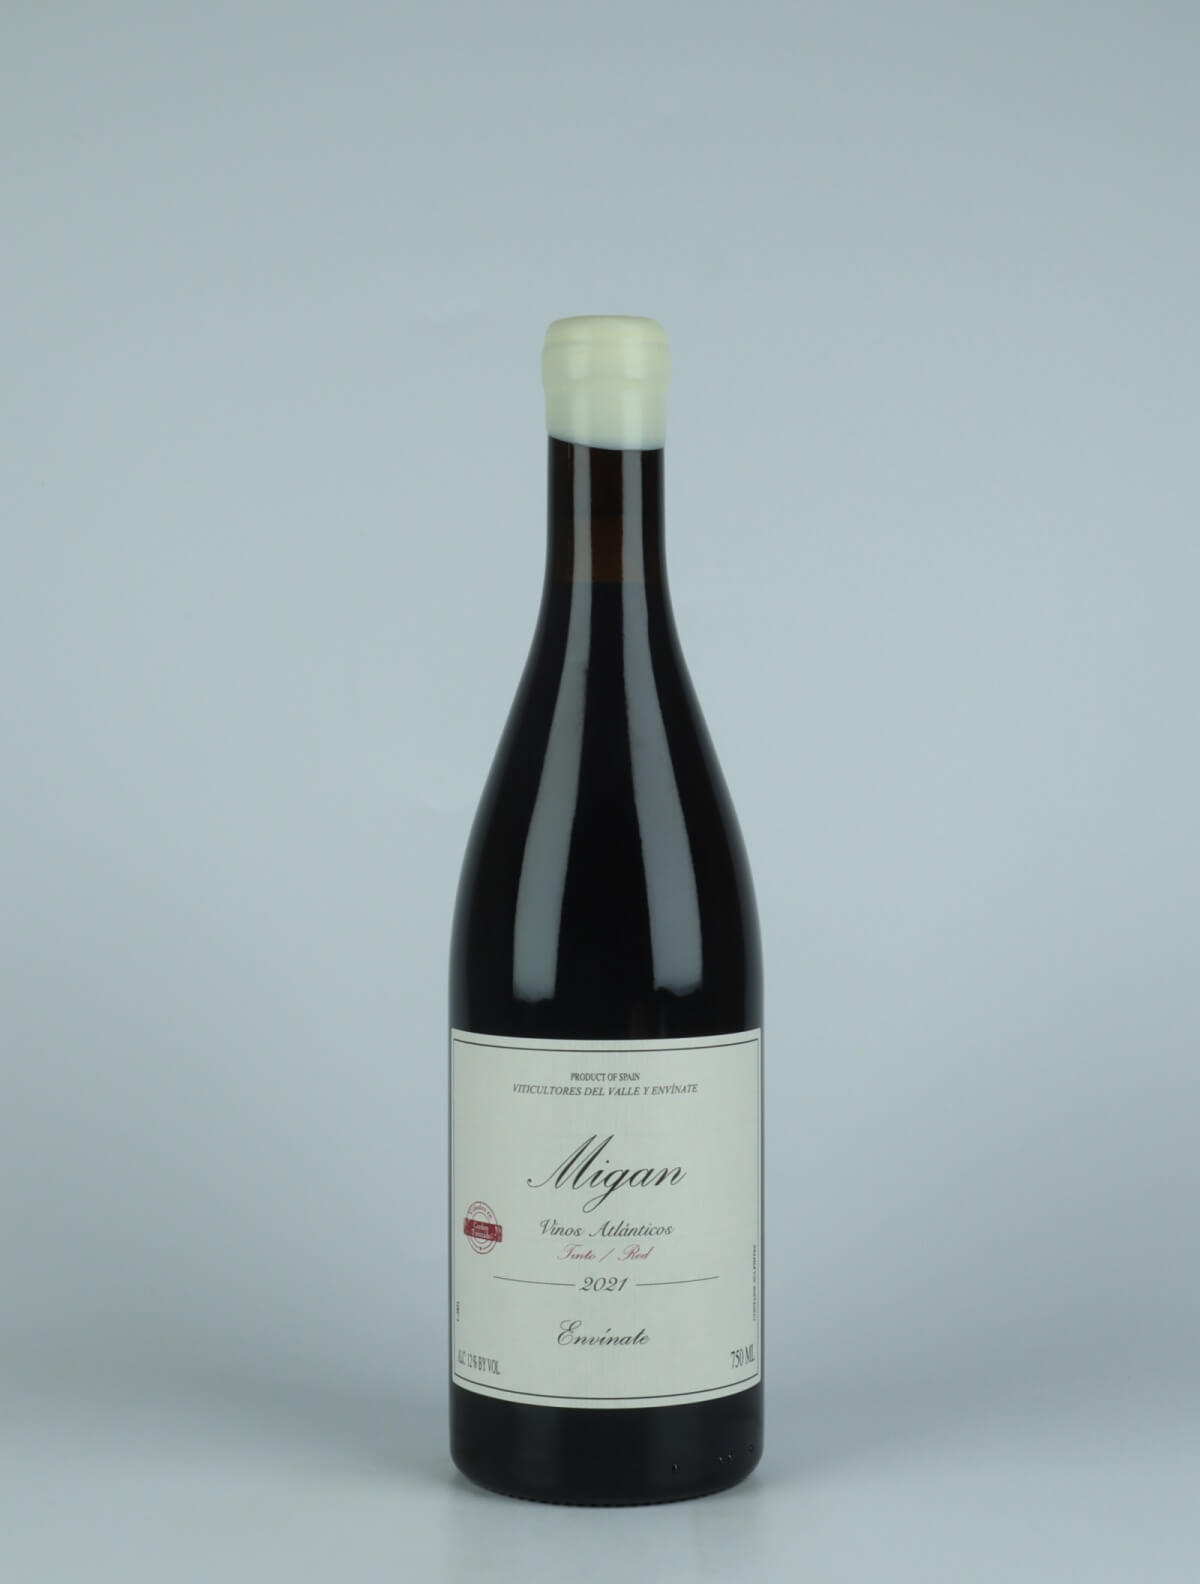 En flaske 2021 Migan - Tenerife Rødvin fra Envínate, Tenerife i Spanien